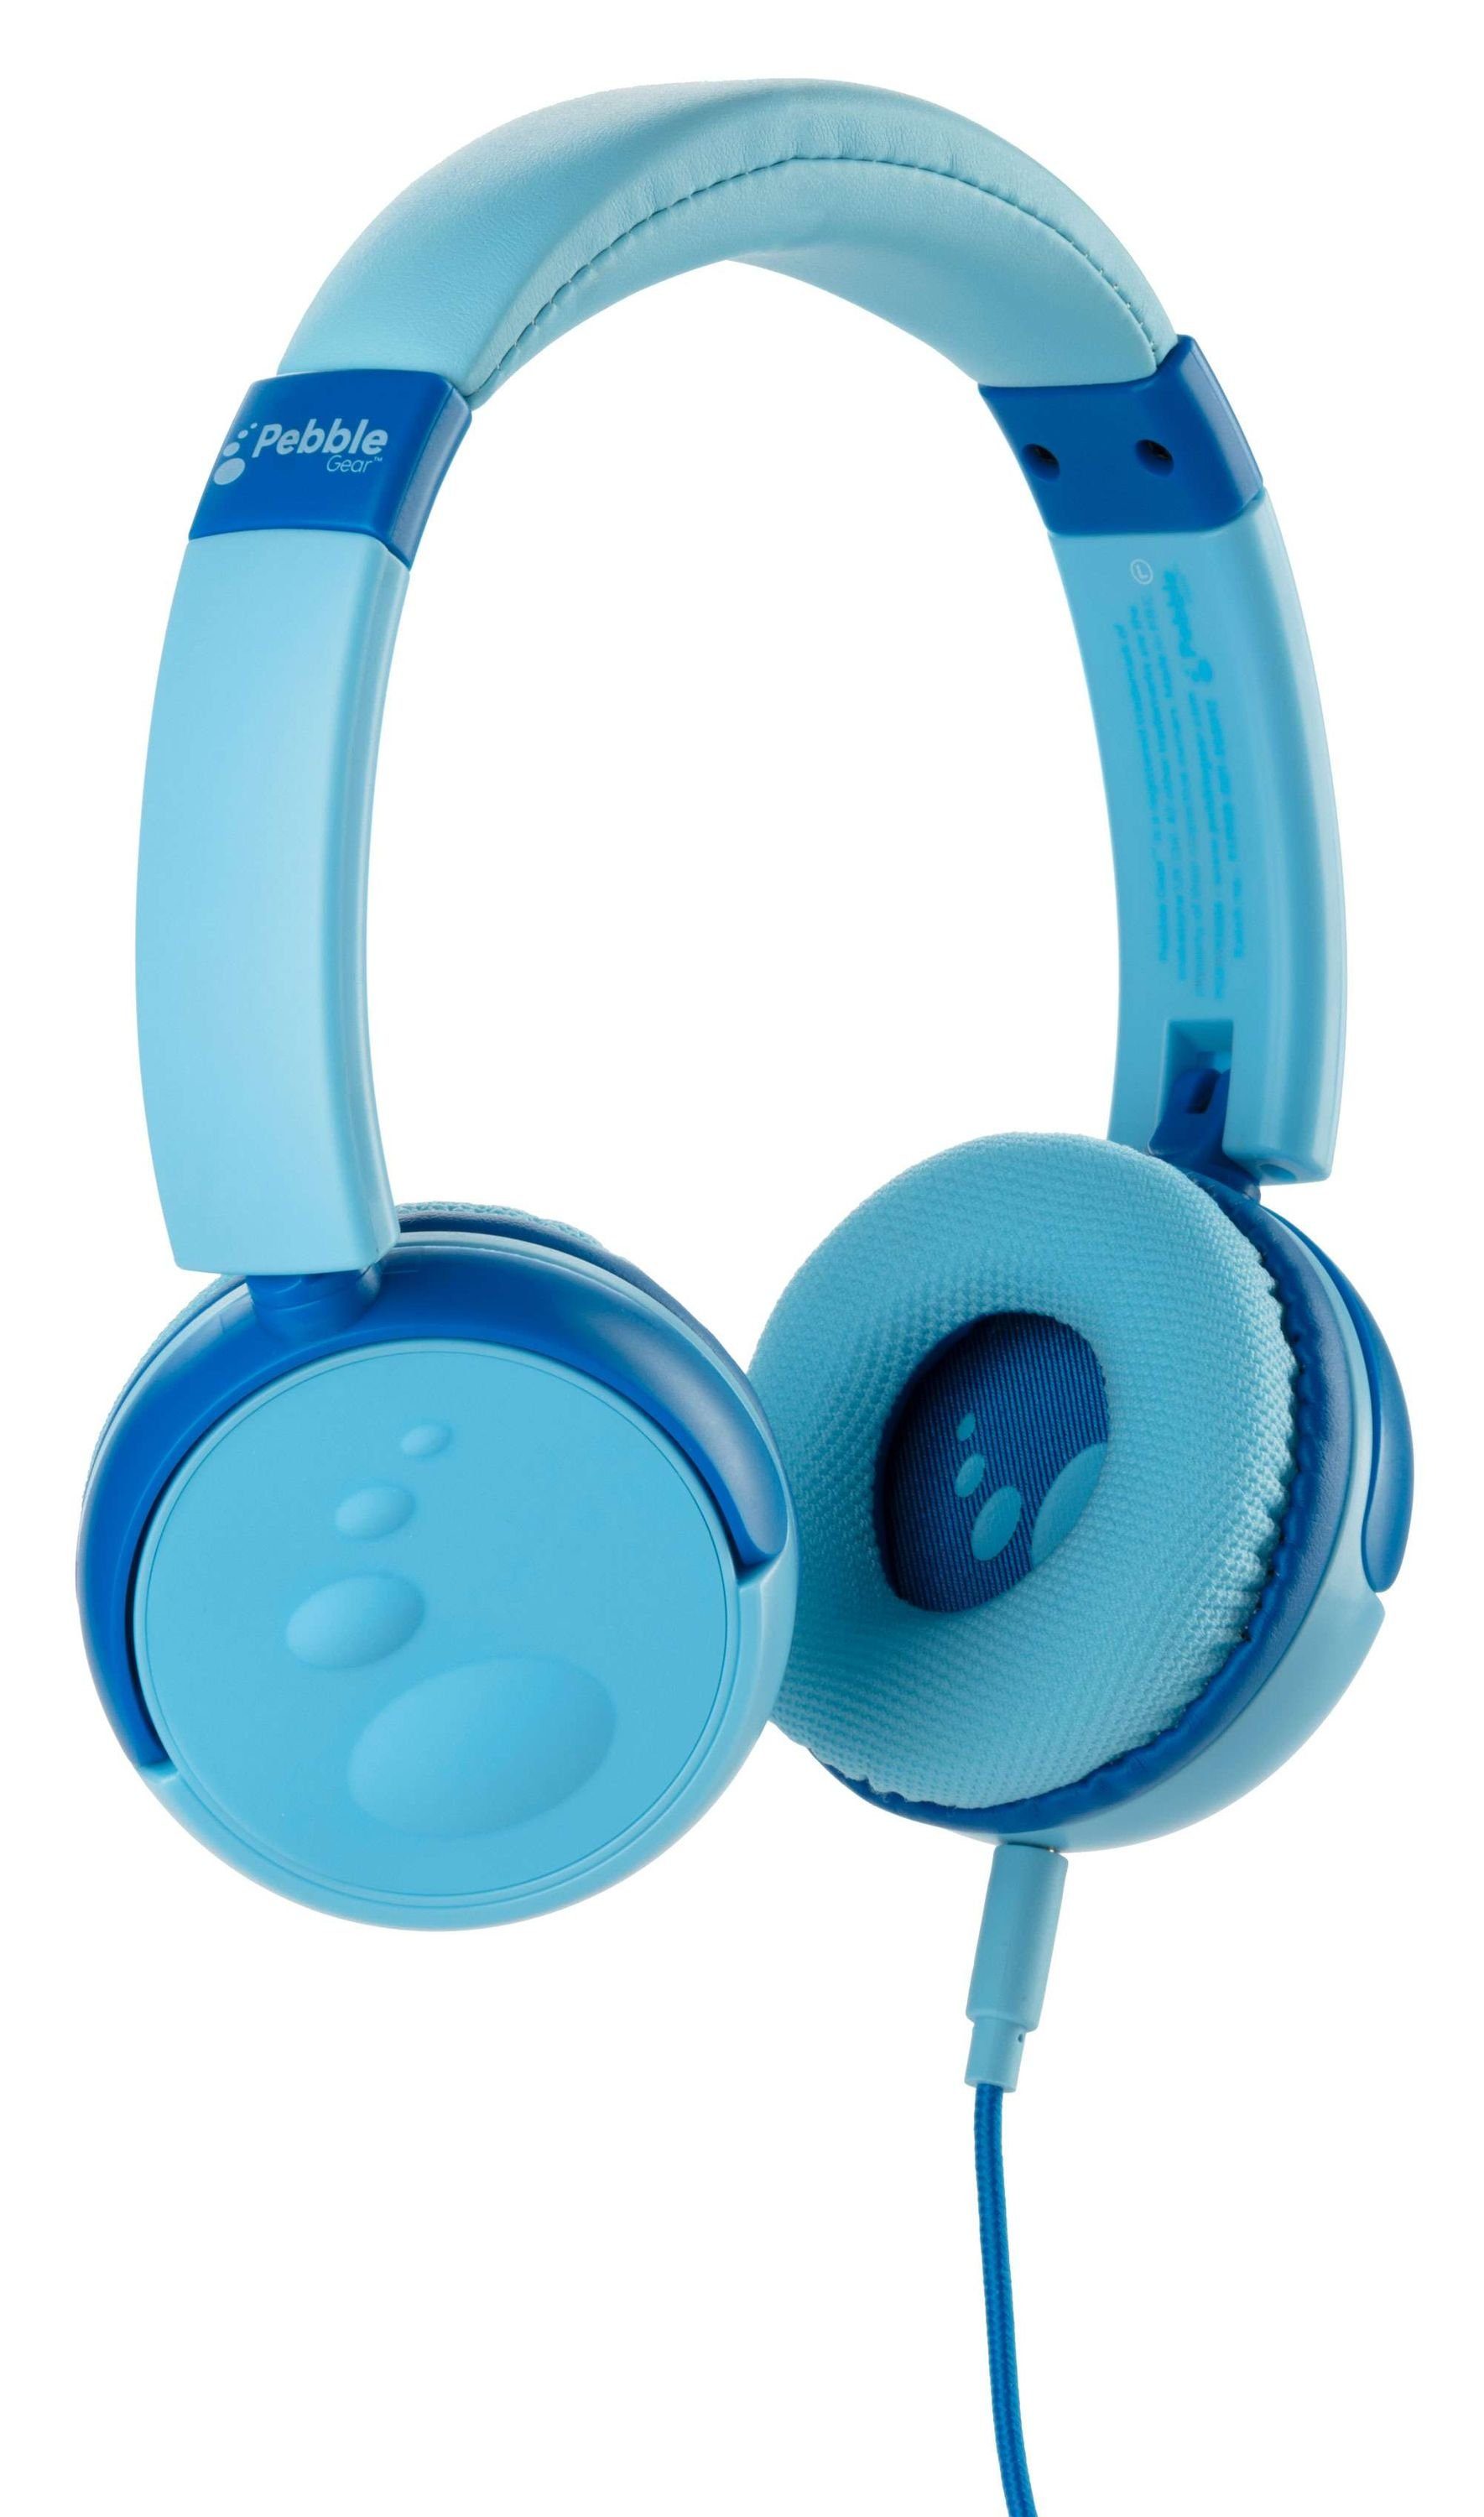 Pebble Gear Kinderkopfhörer blau/ Klinke (3,5mm Lautstärkebegrenzung mit kindersicher pink Kinder-Kopfhörer 85 faltbar, Kids-Design), - Lautstärkebegrenzung 85 dB dB Kindersicher